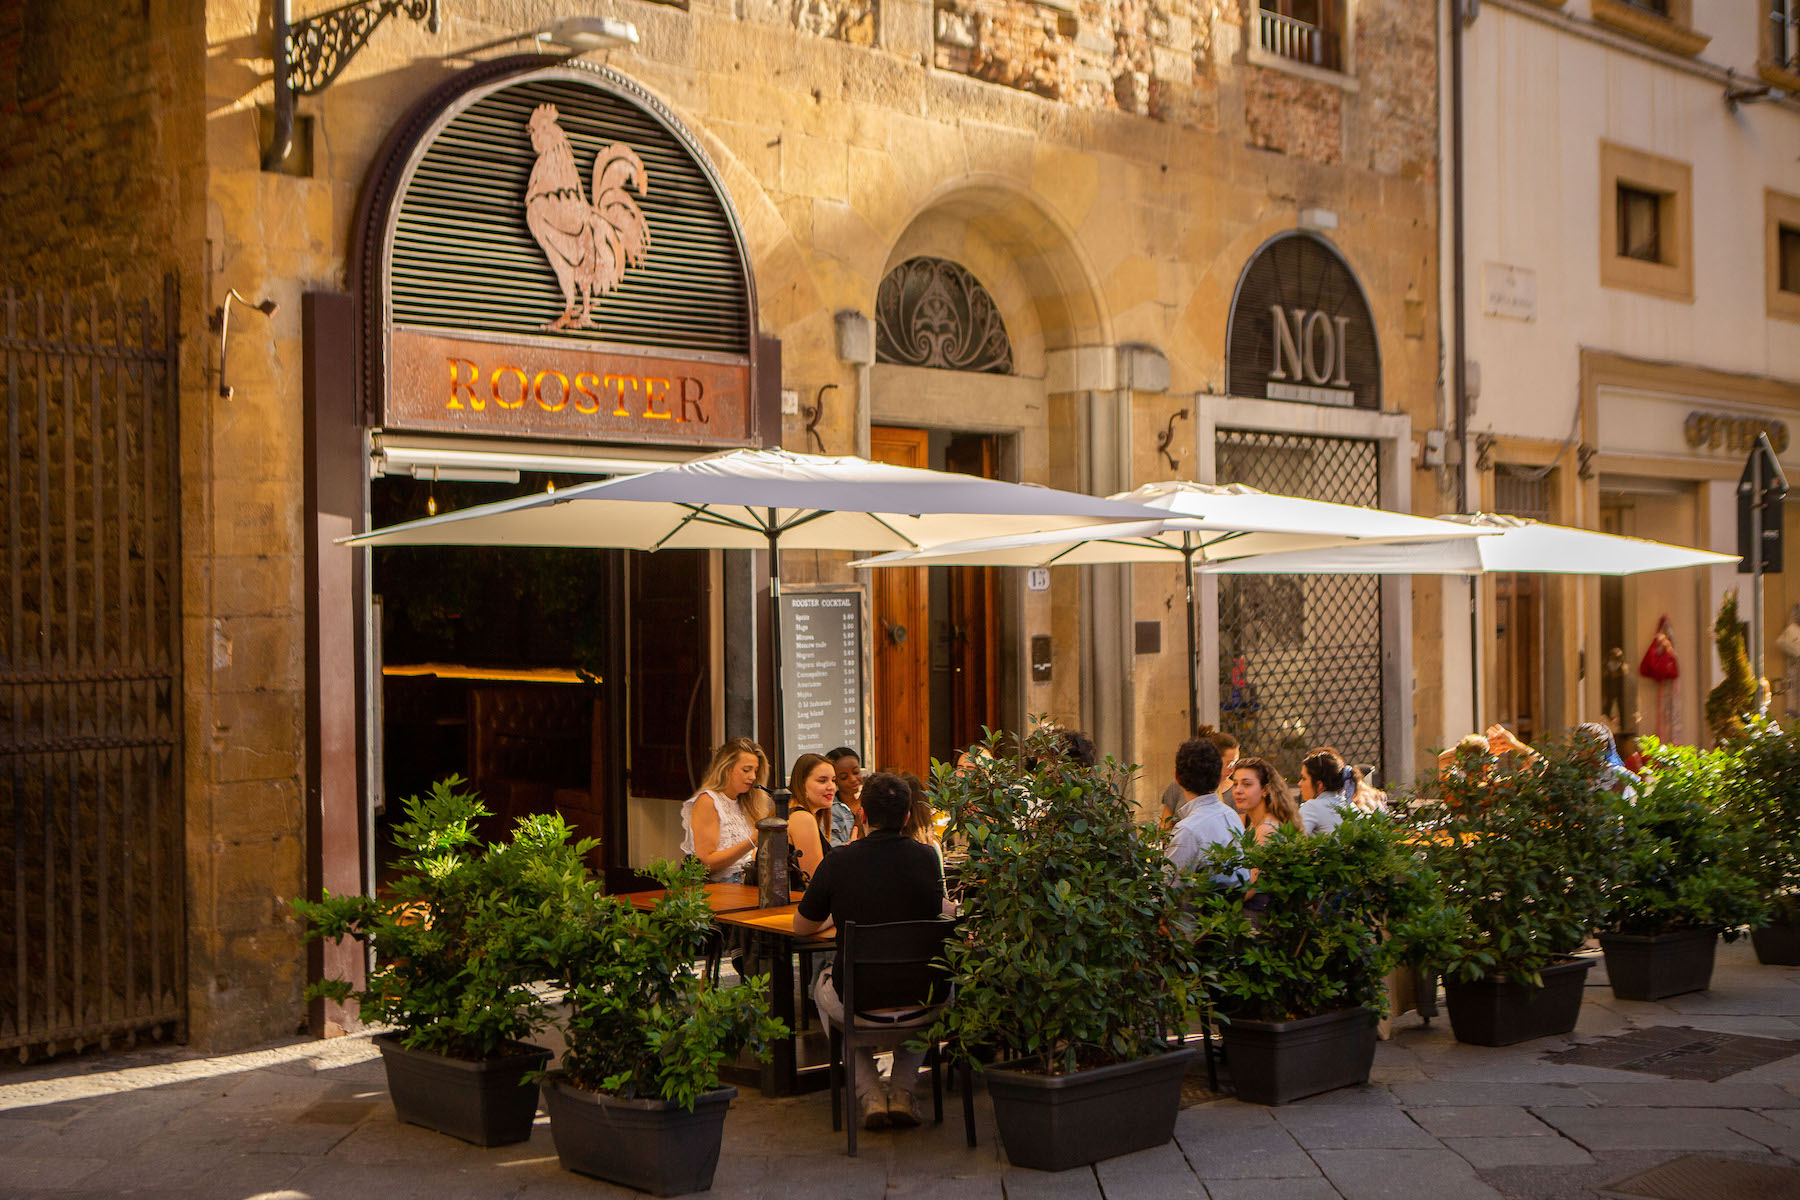 Lugares para comer em Florença: comida internacional | Rooster Cafe Firenze | Conexão123